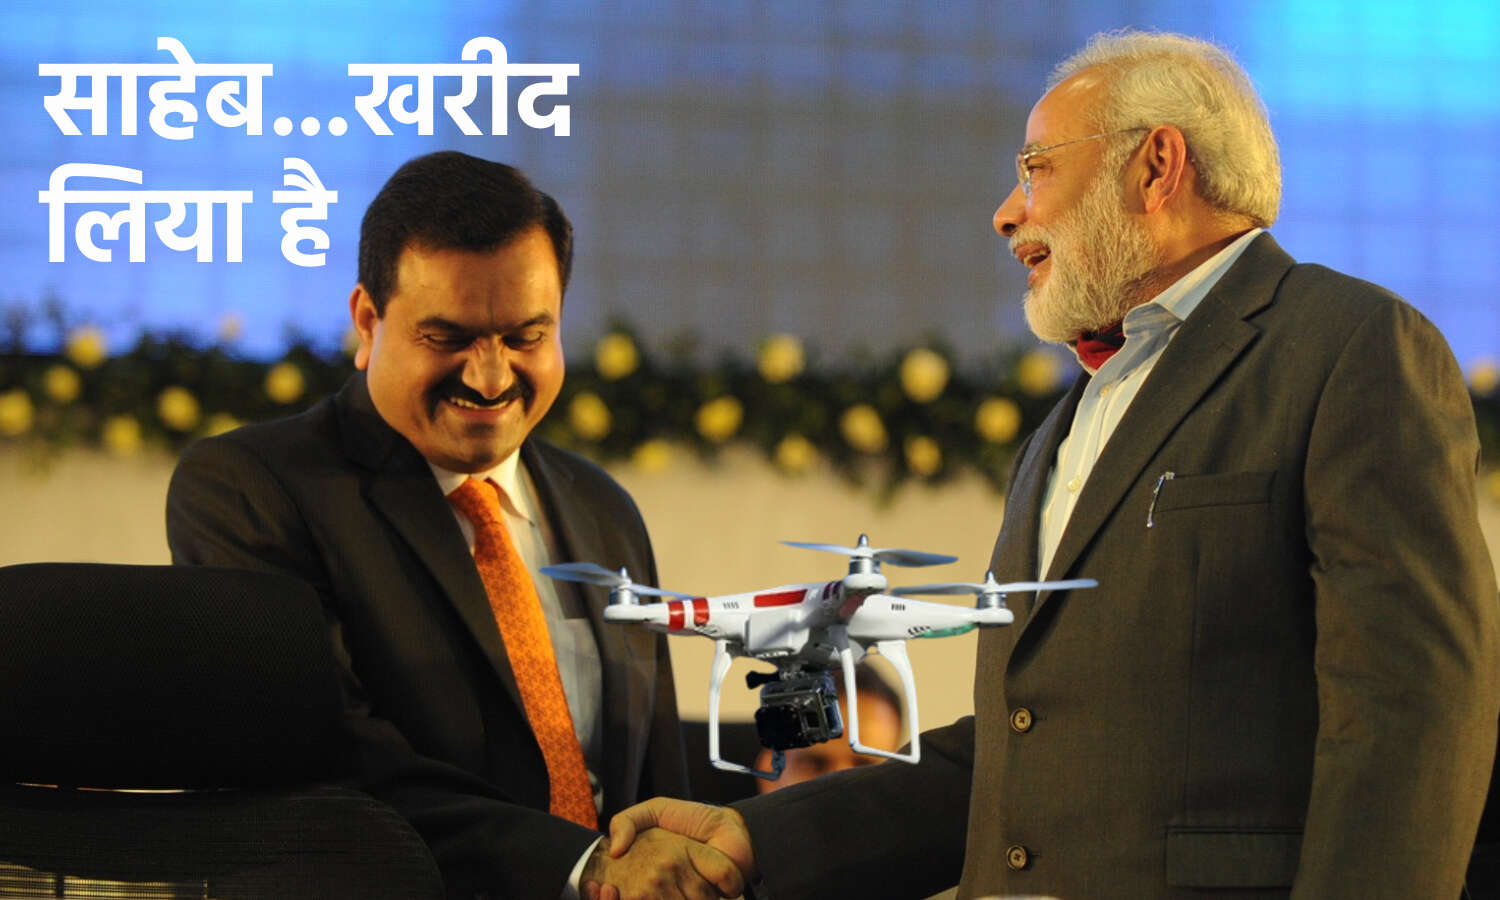 Adani Drone News : मोदी जैसे ही बोले- हर खेत में देखना चाहता हूं ड्रोन, अडानी ने खरीद लिए ड्रोन कंपनी के 50% शेयर